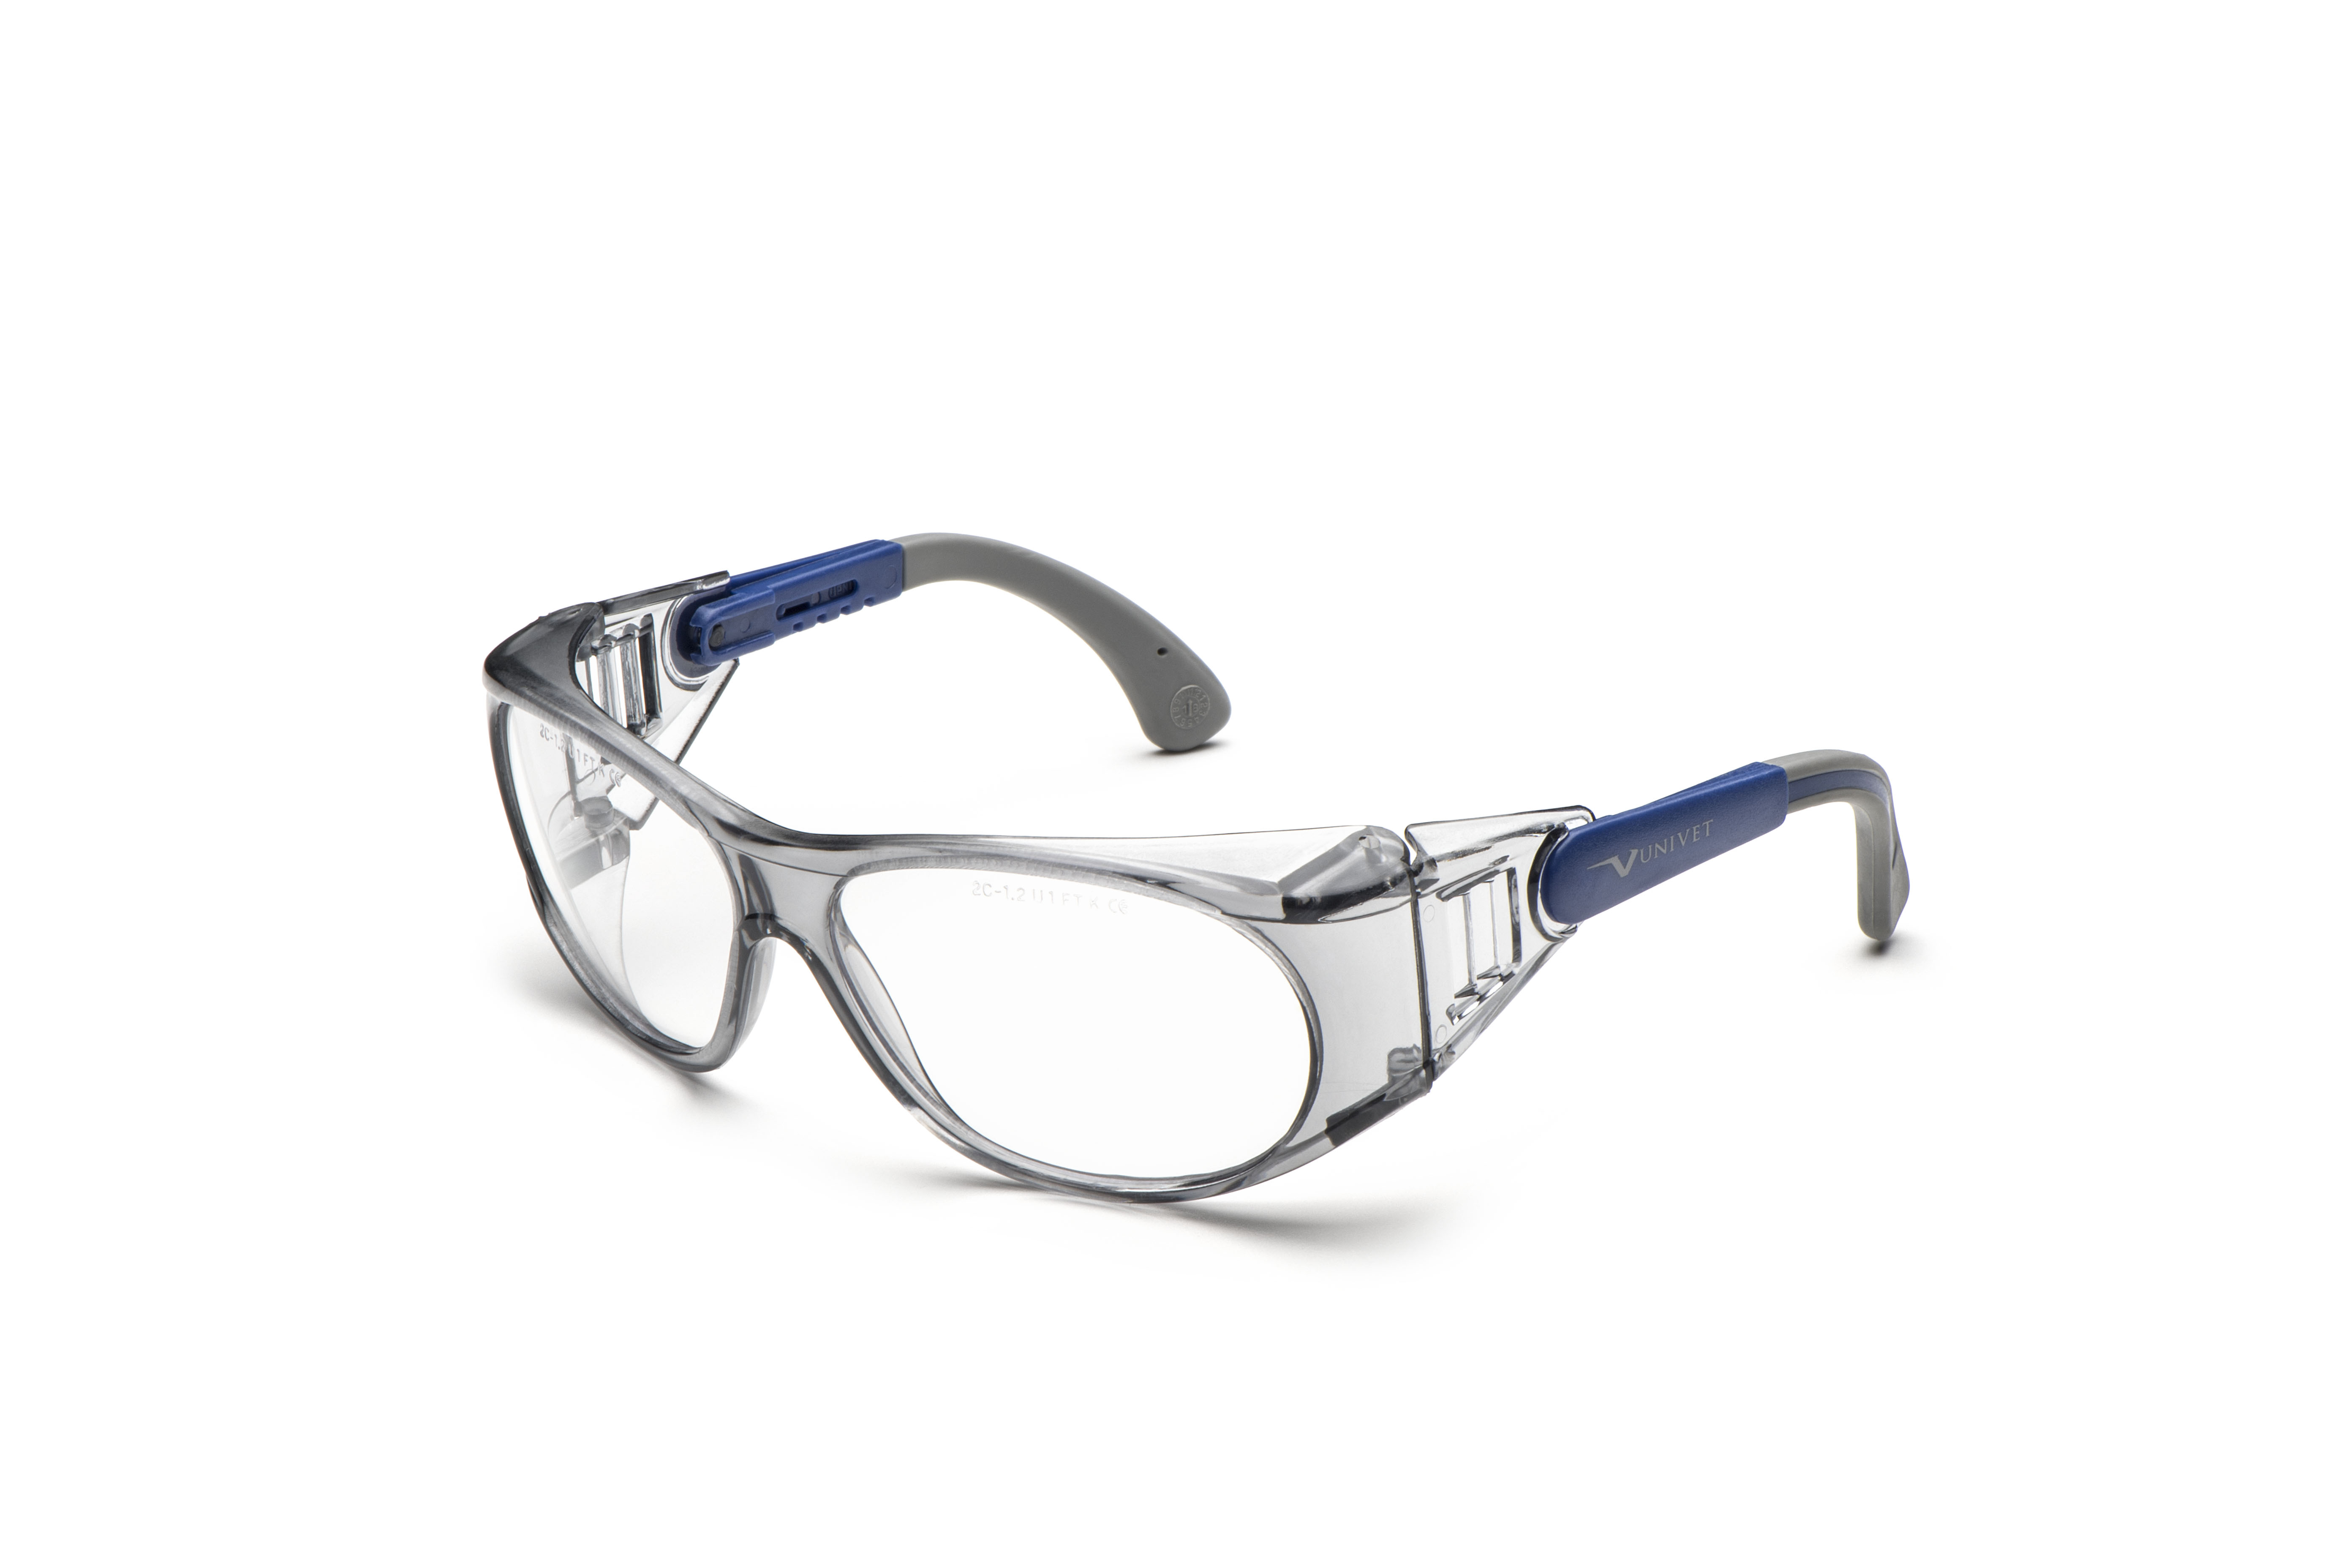 Gafas de Protección Ocular